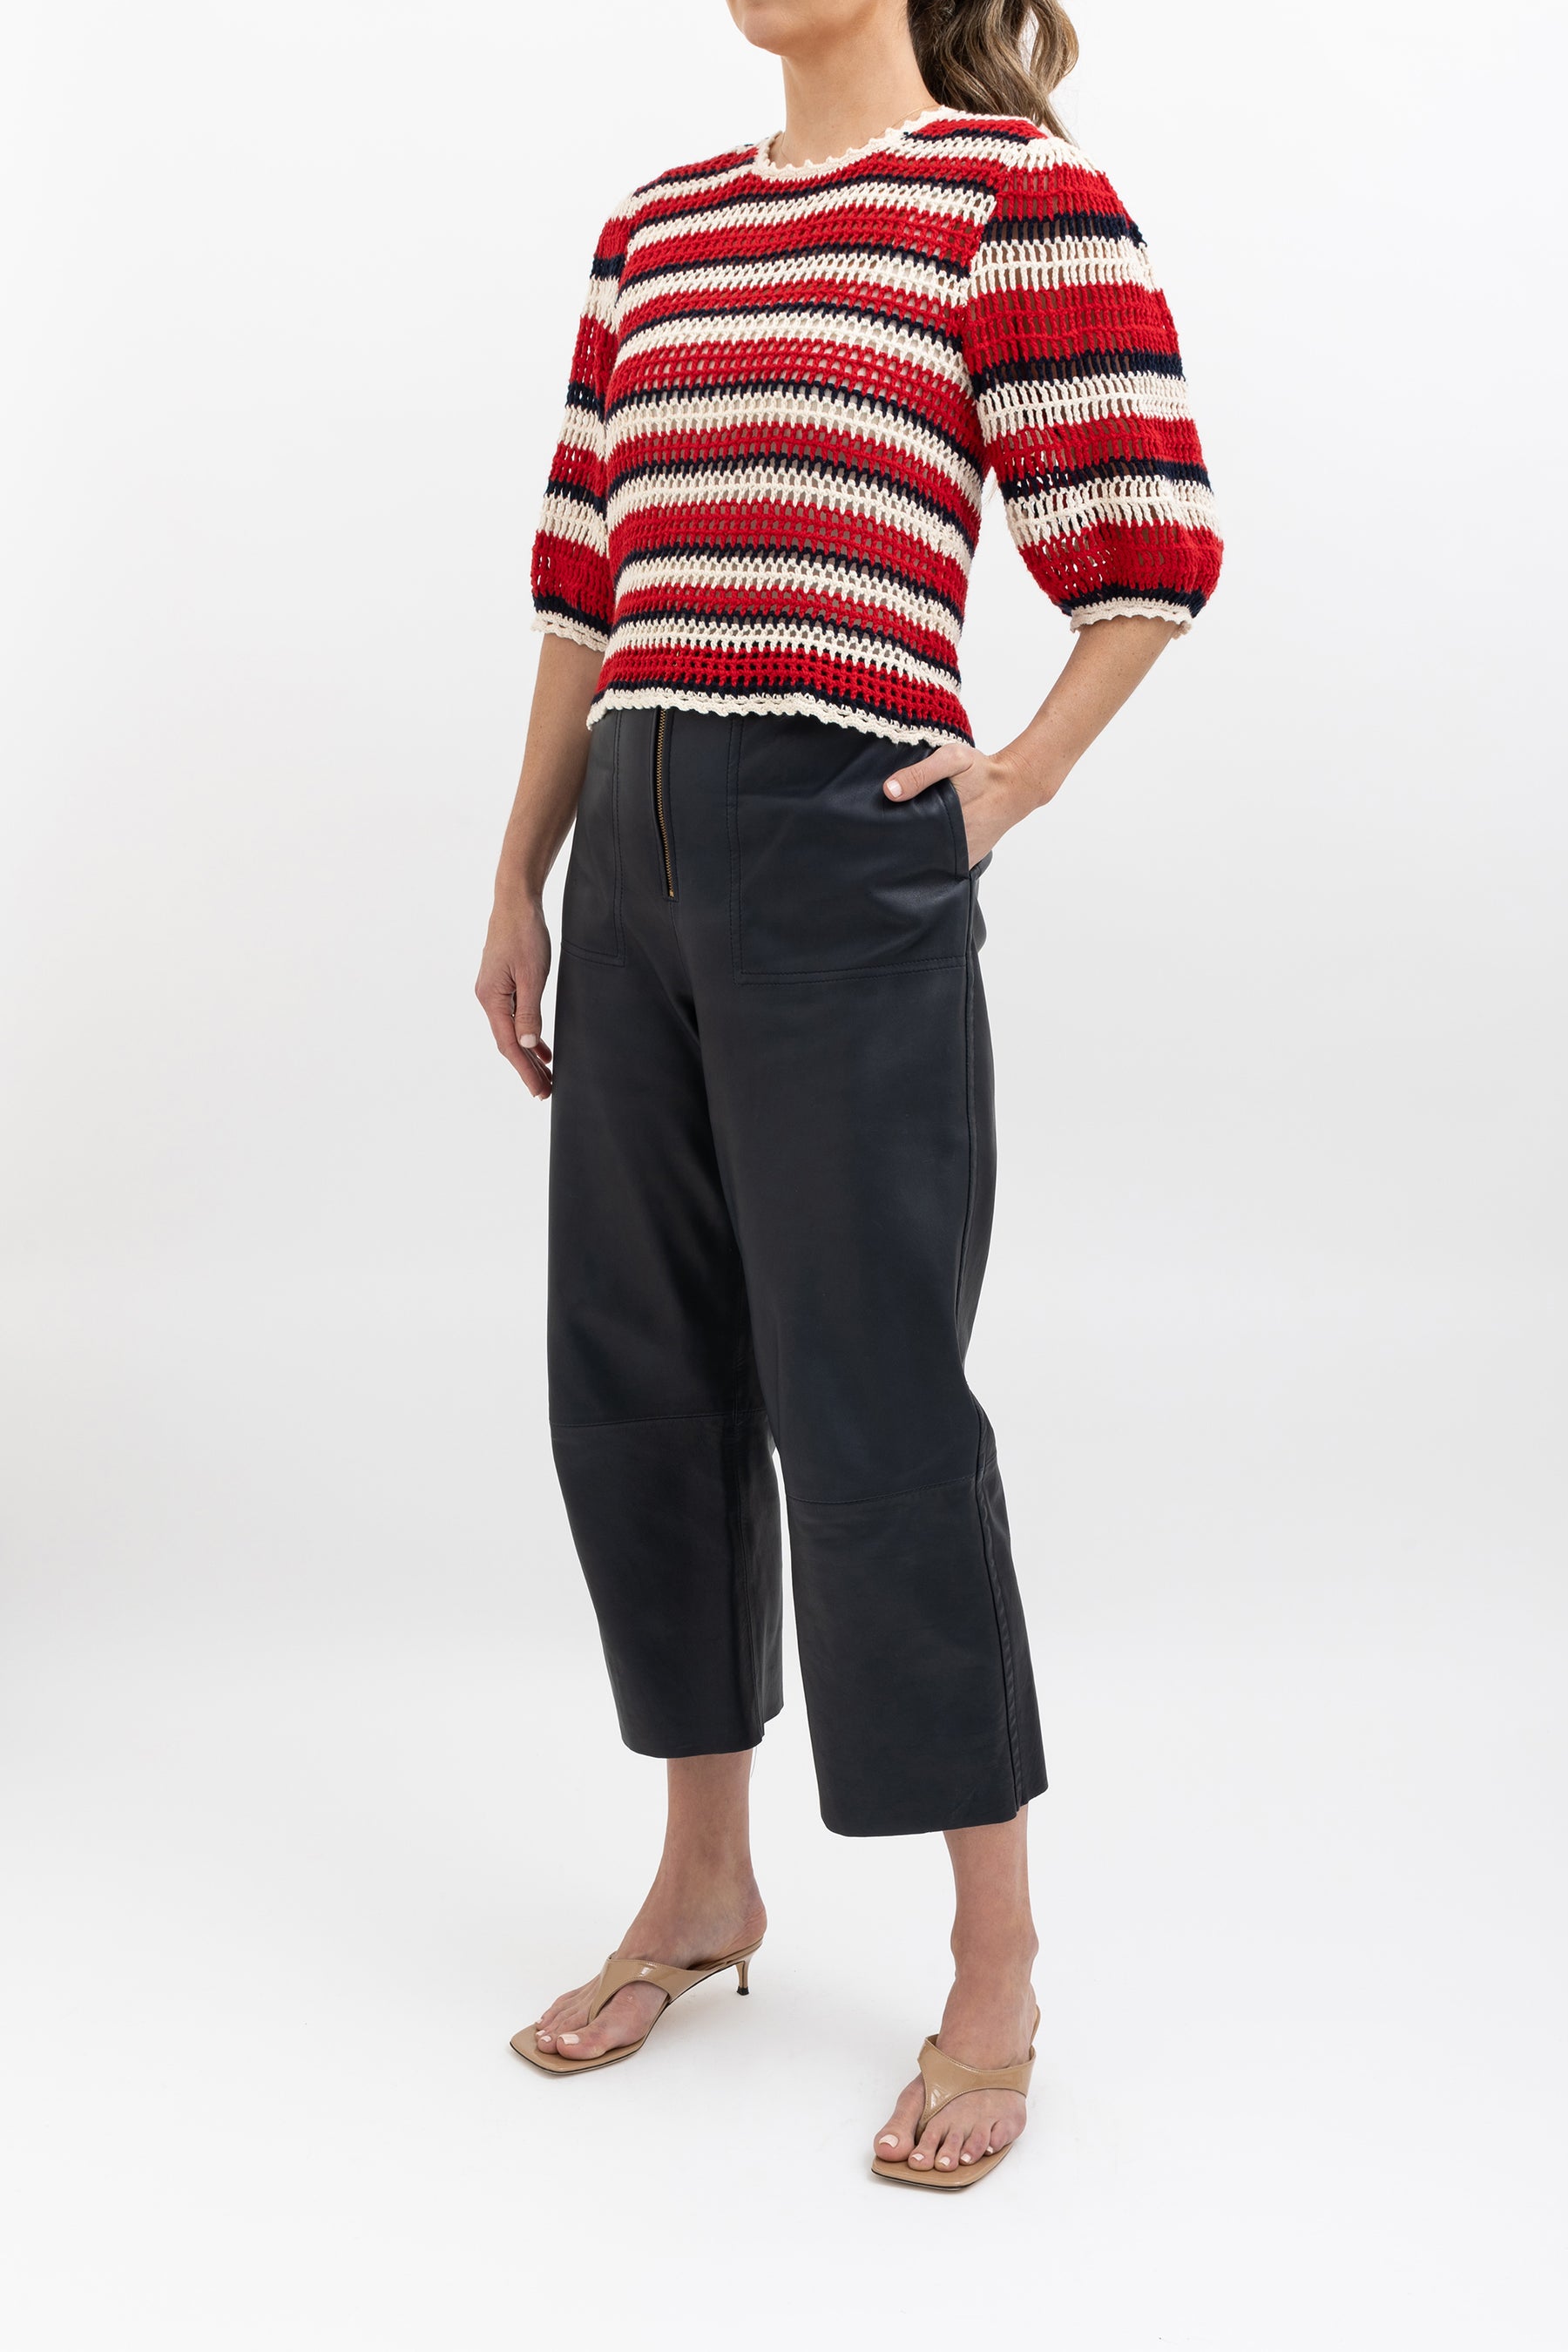 Stripe Crochet Knit